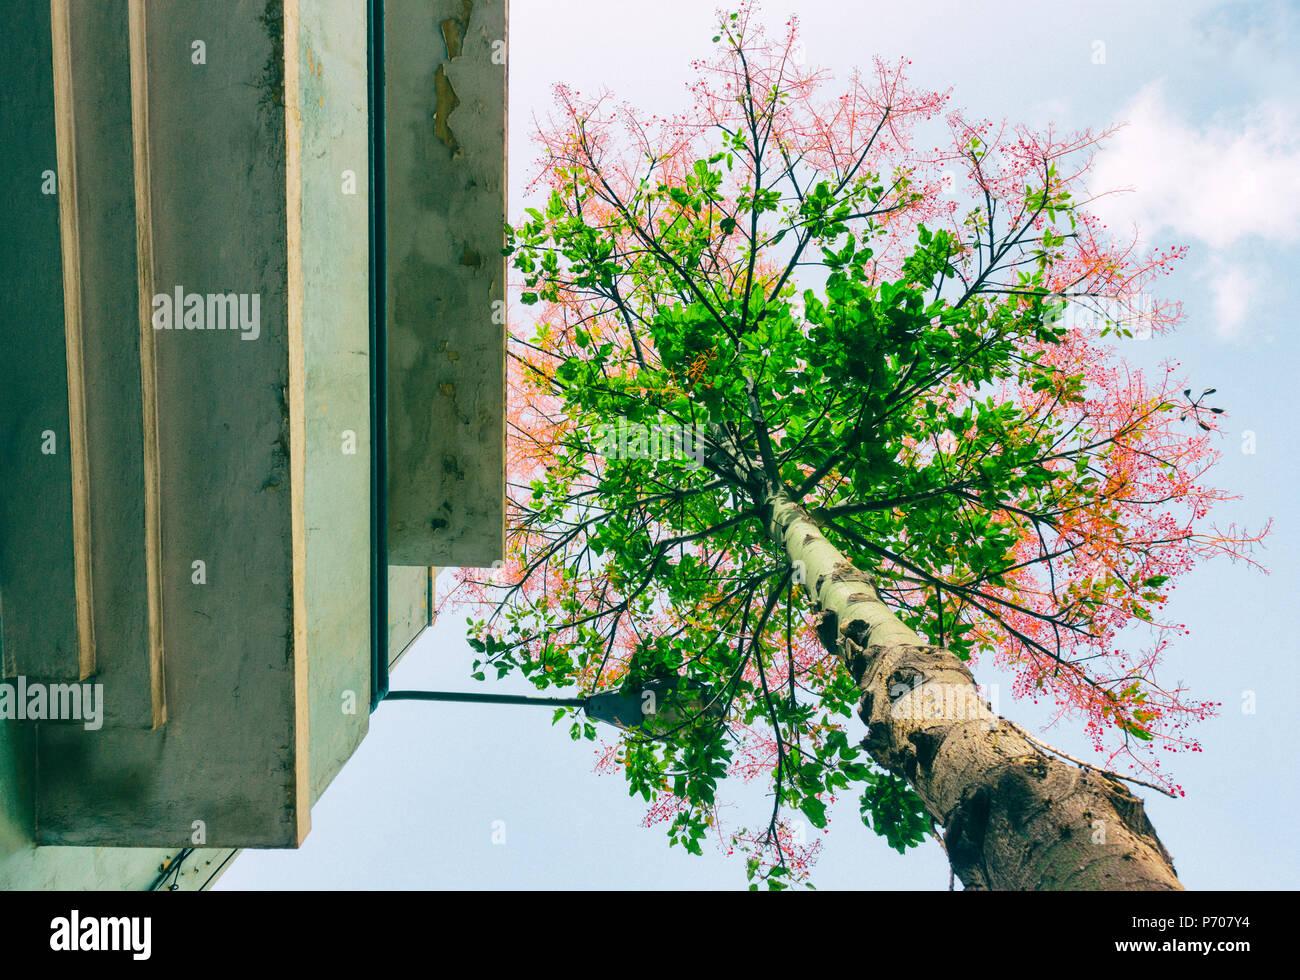 Basso angolo di visione della fioritura di albero in una strada di città strada di copertura luce Foto Stock